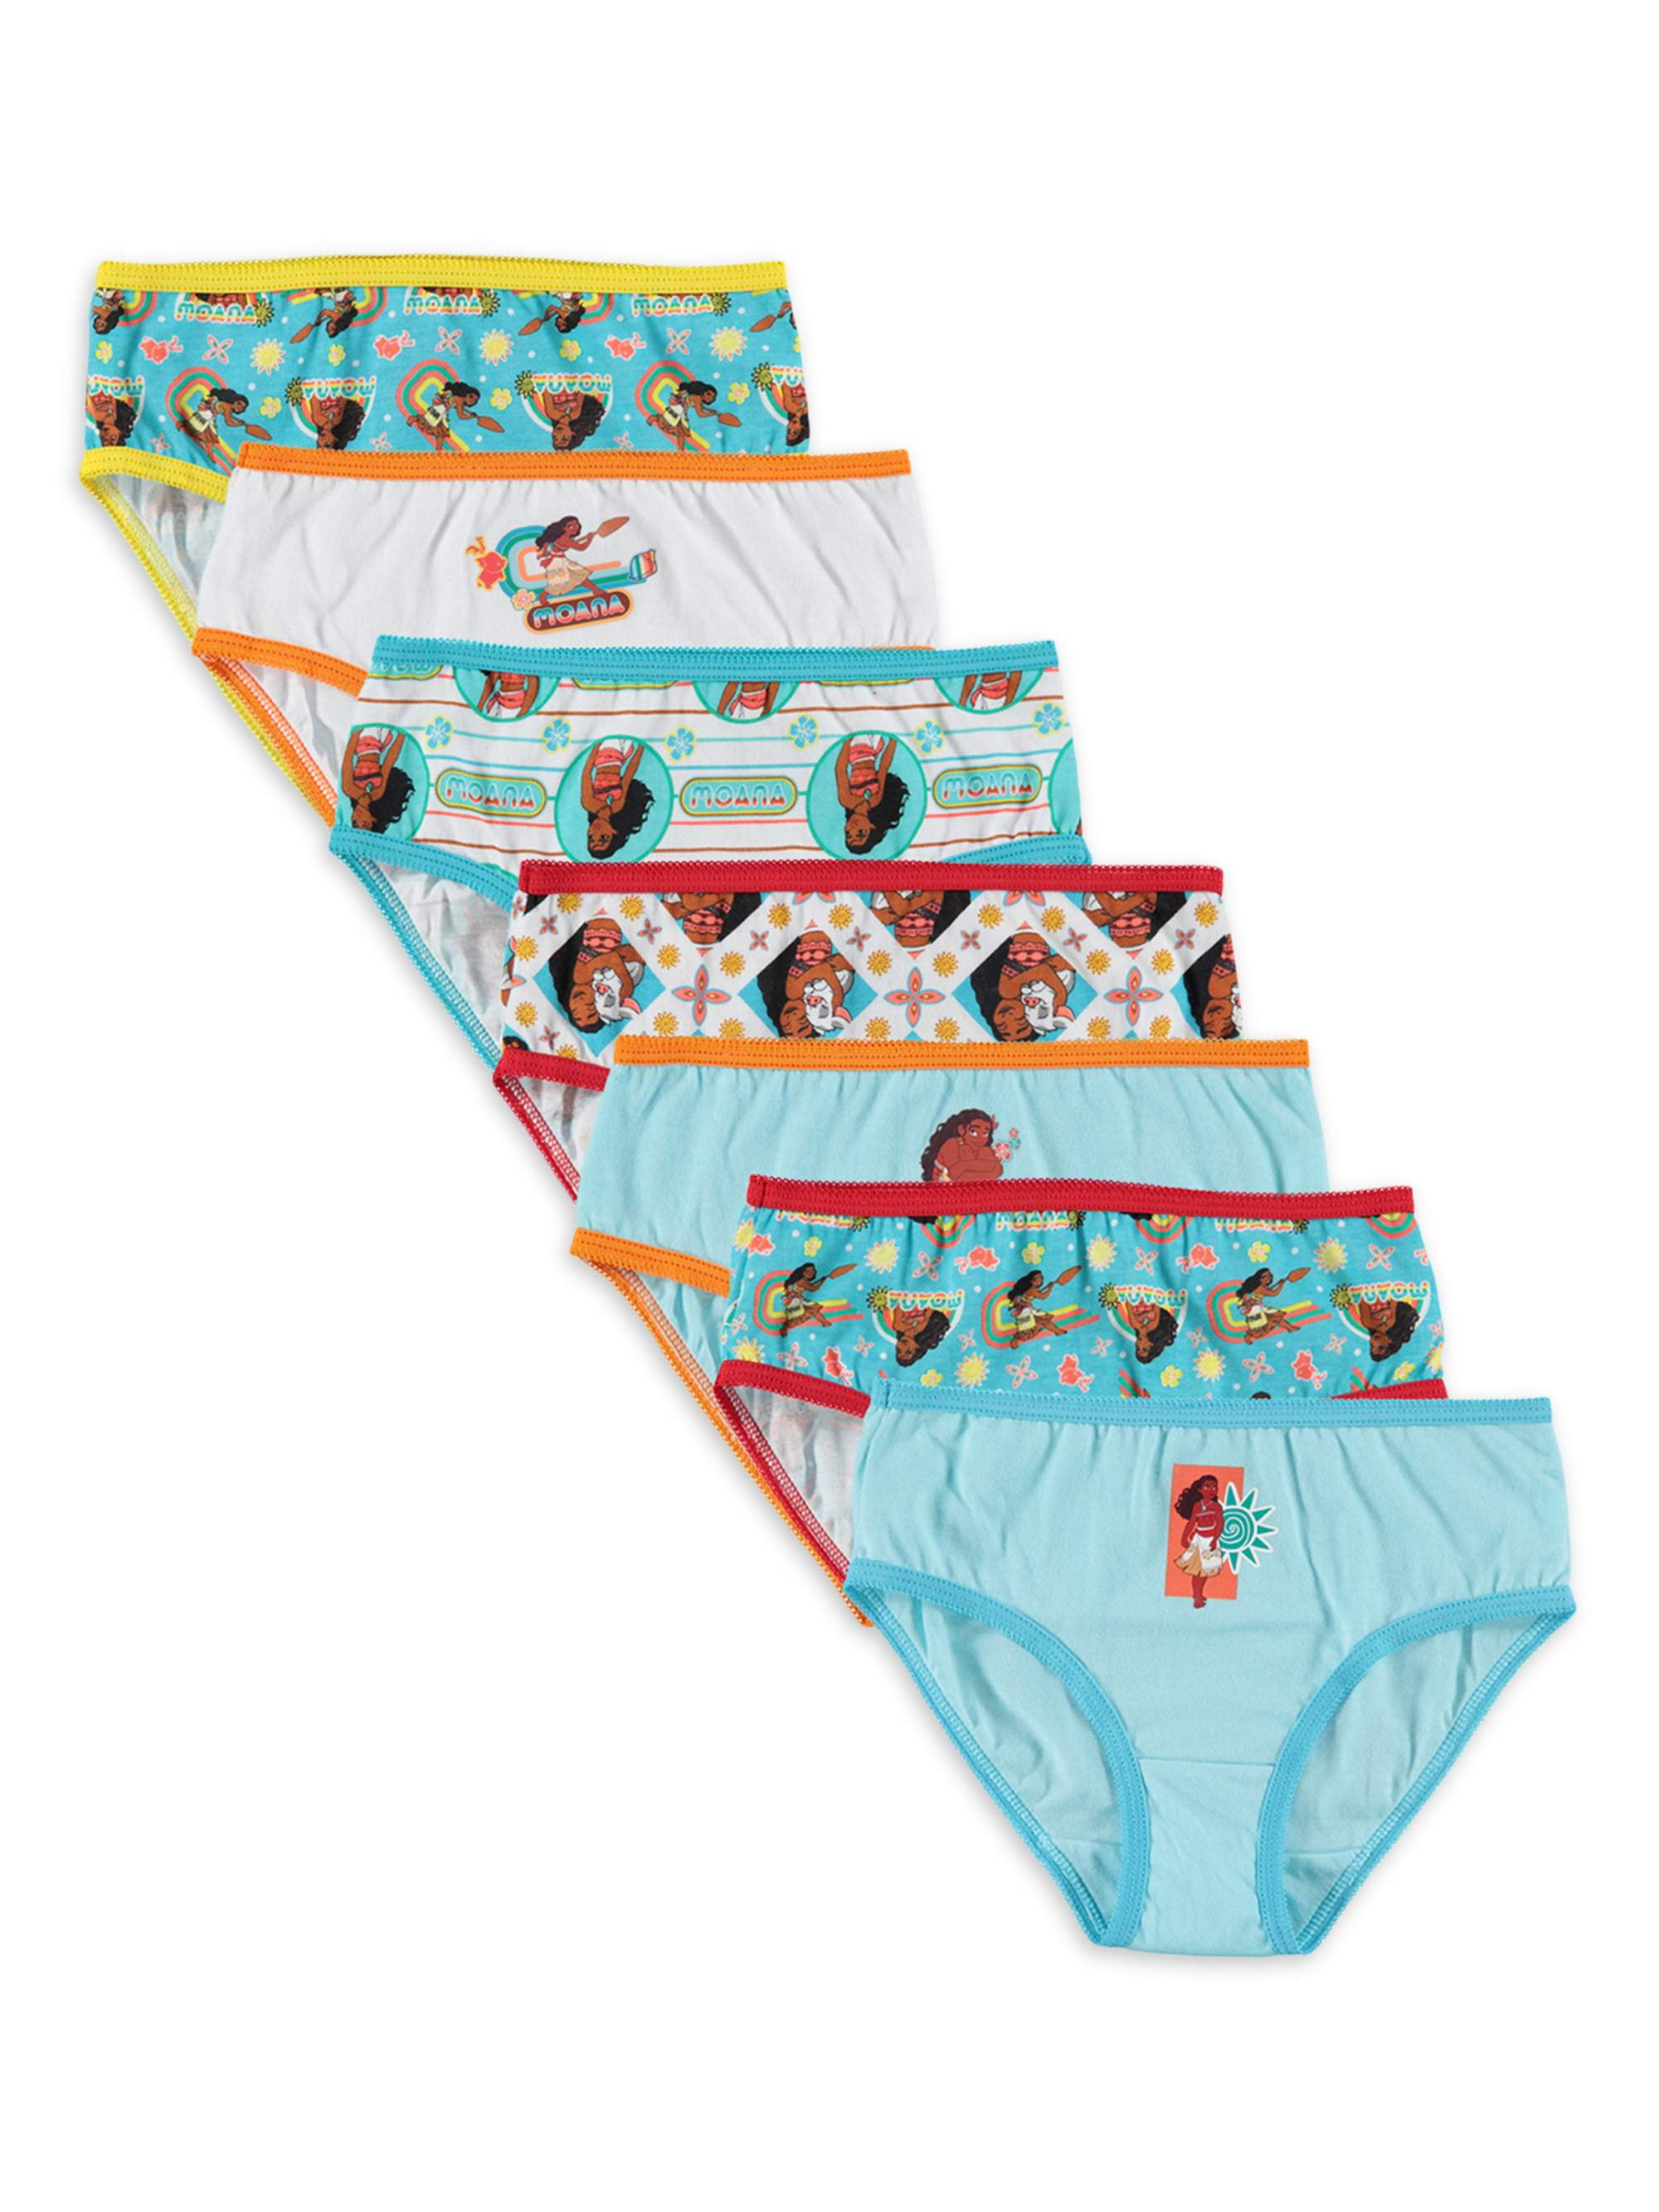 Moana Girls Underwear, 7 Pack Panties (Little Girls & Big Girls